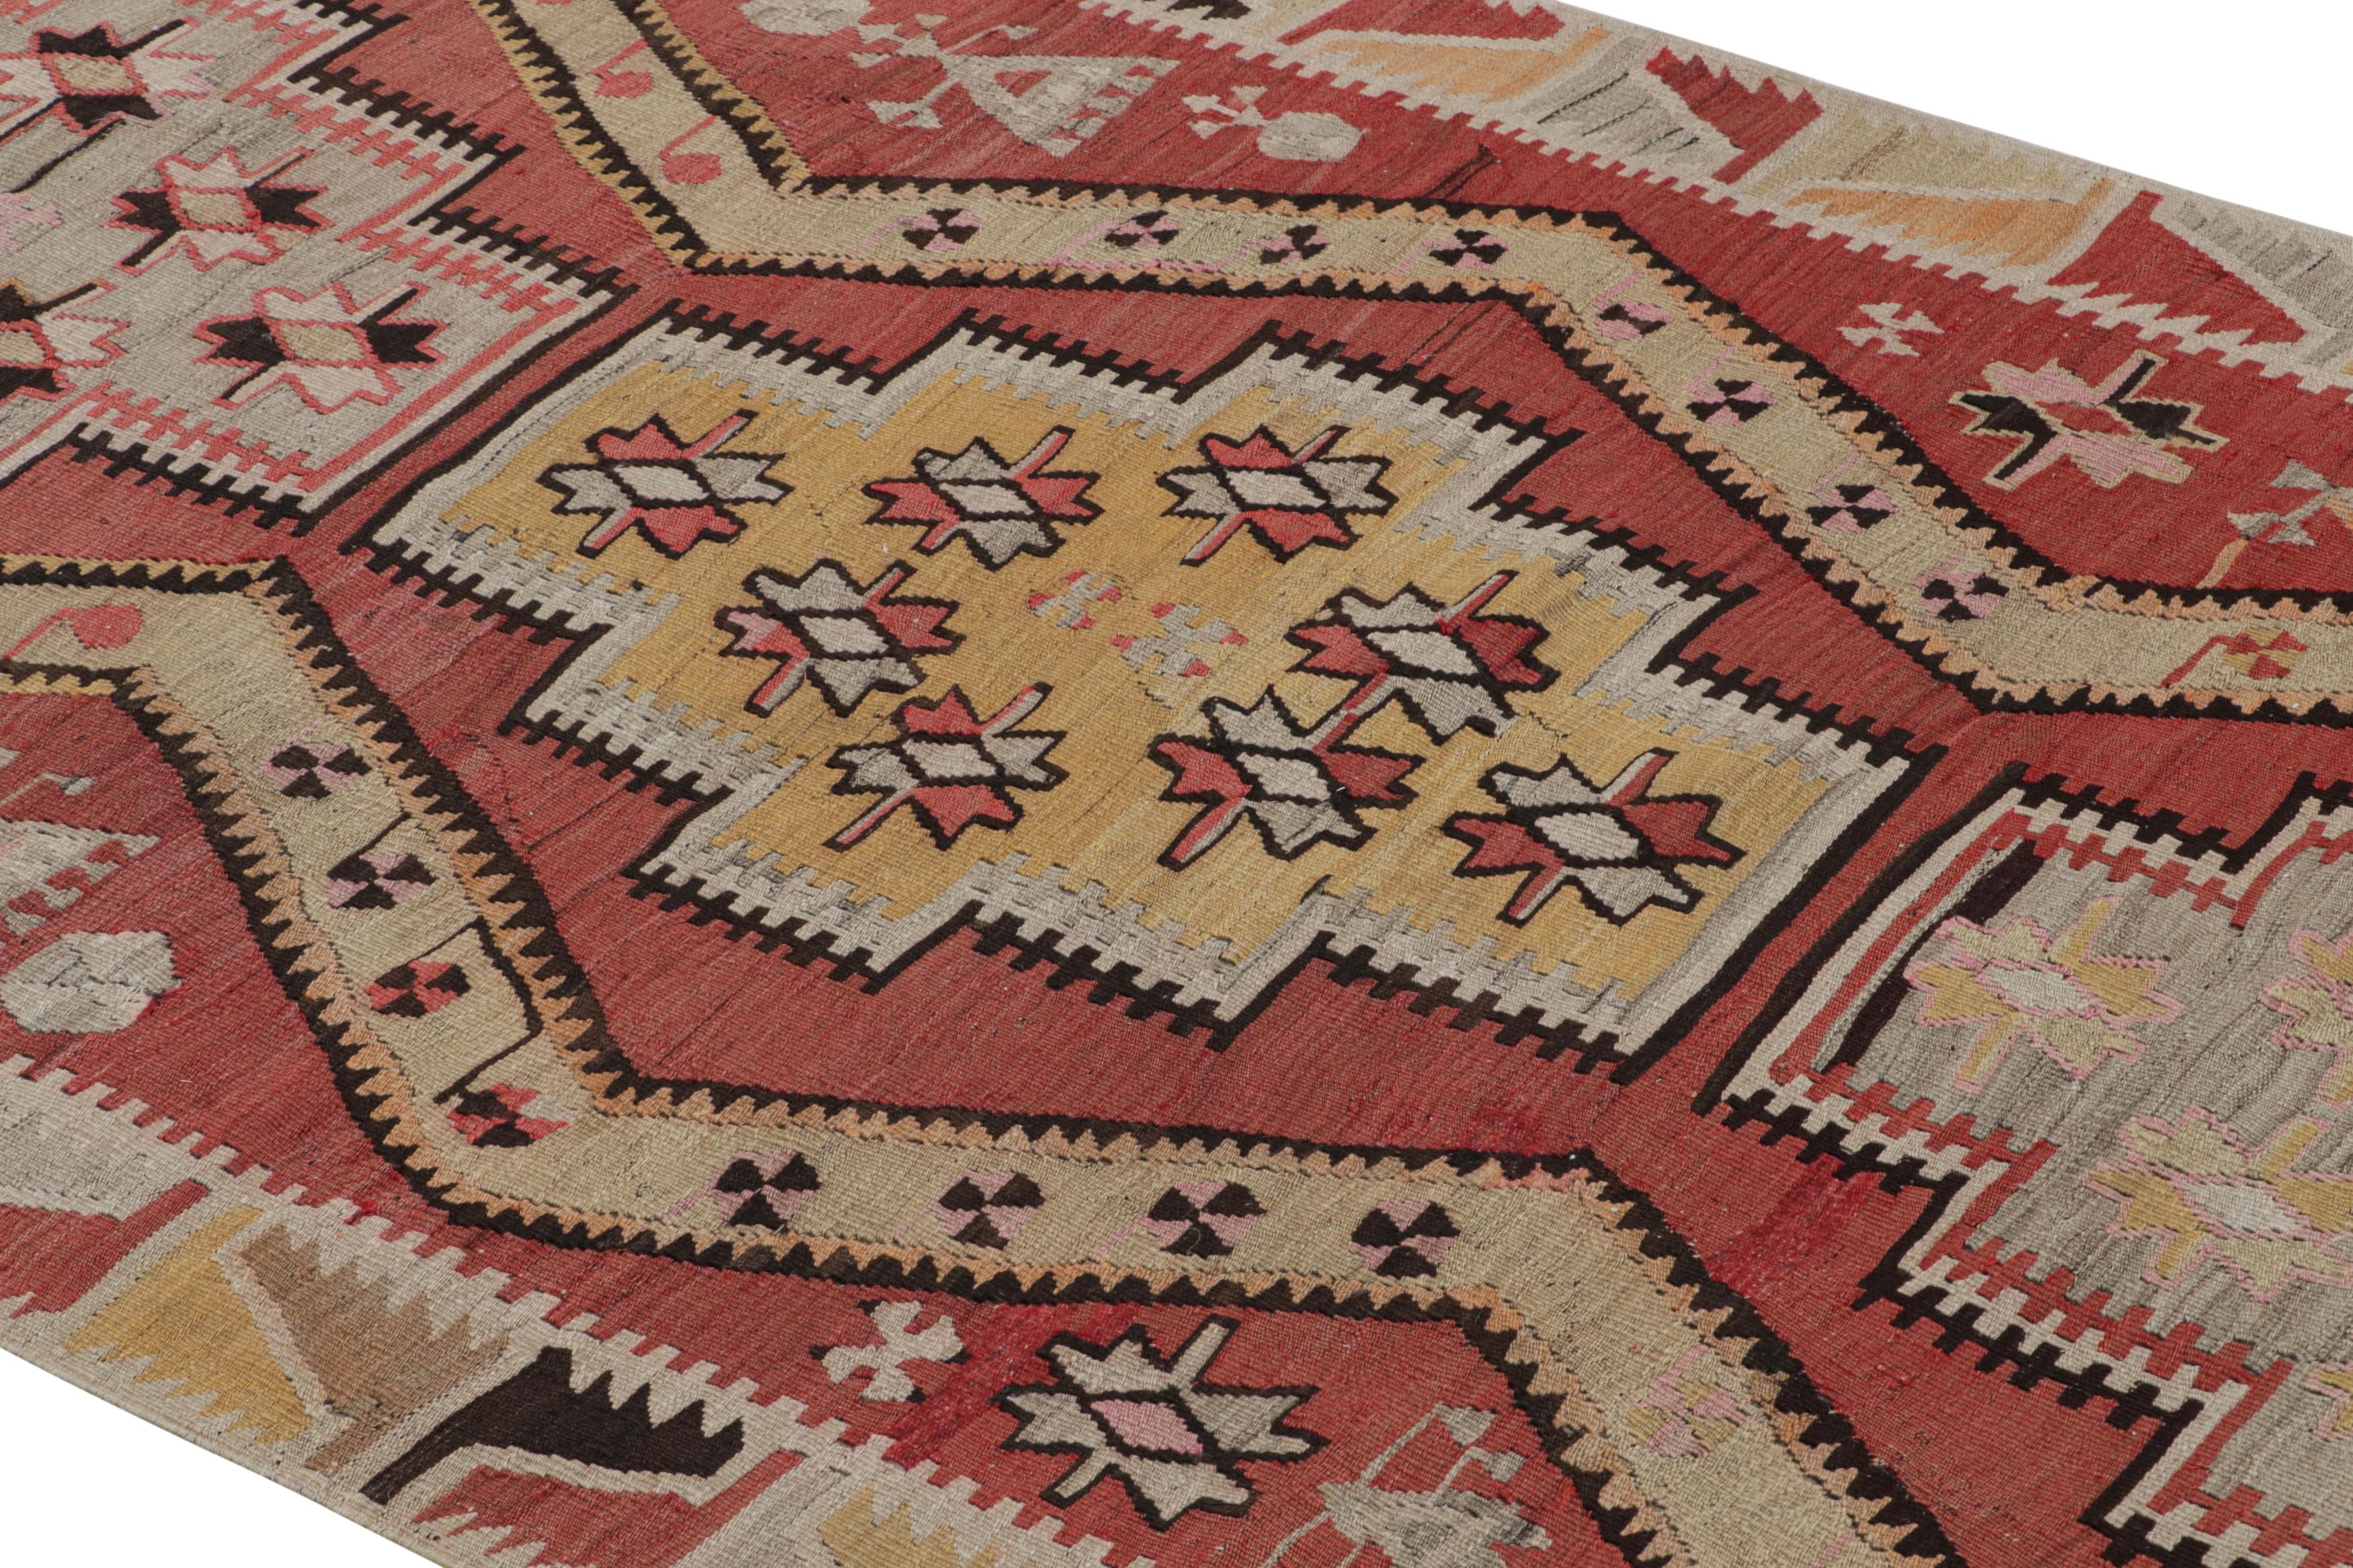 Dieser flachgewebte Teppich aus hochwertiger Wolle, der zwischen 1930 und 1940 in der Türkei hergestellt wurde, ist ein klassischer Kayseri-Kilim mit einladenden floralen und subtilen Stammesmotiven in dem ausgedehnten Felddesign, das durch die